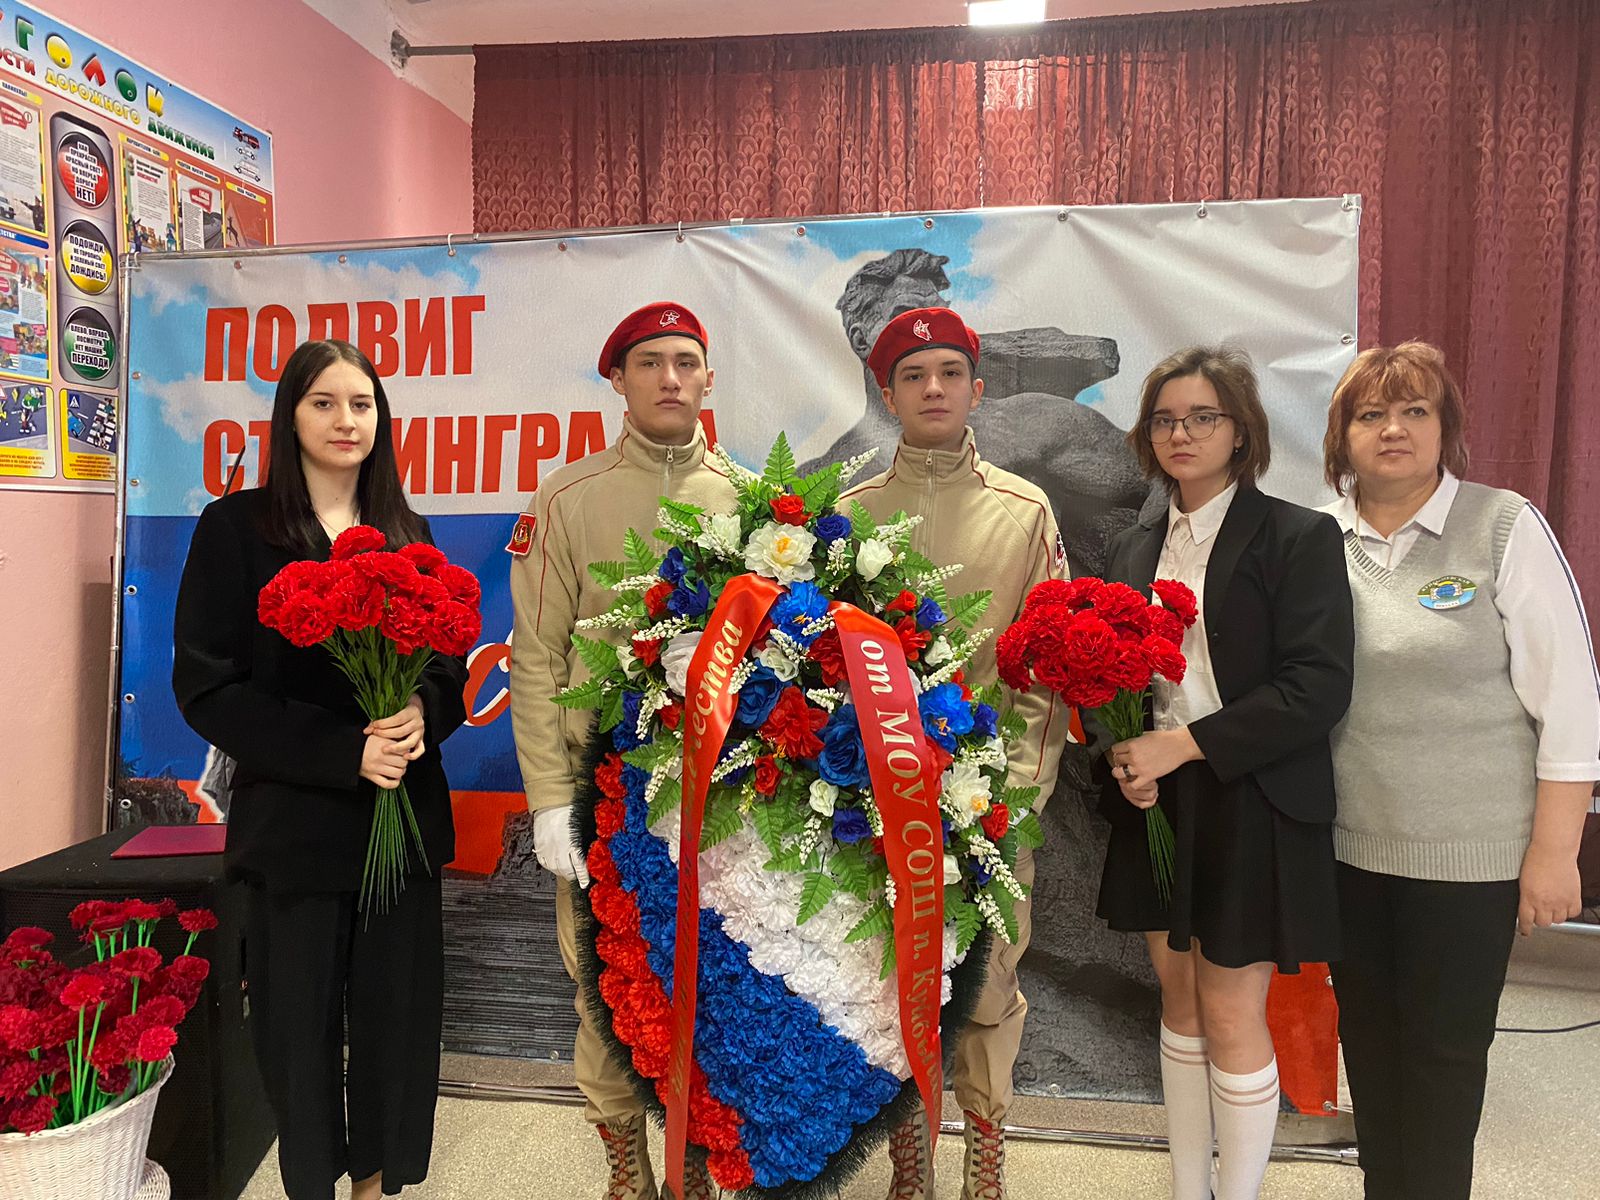 2 февраля отмечается День воинской славы России